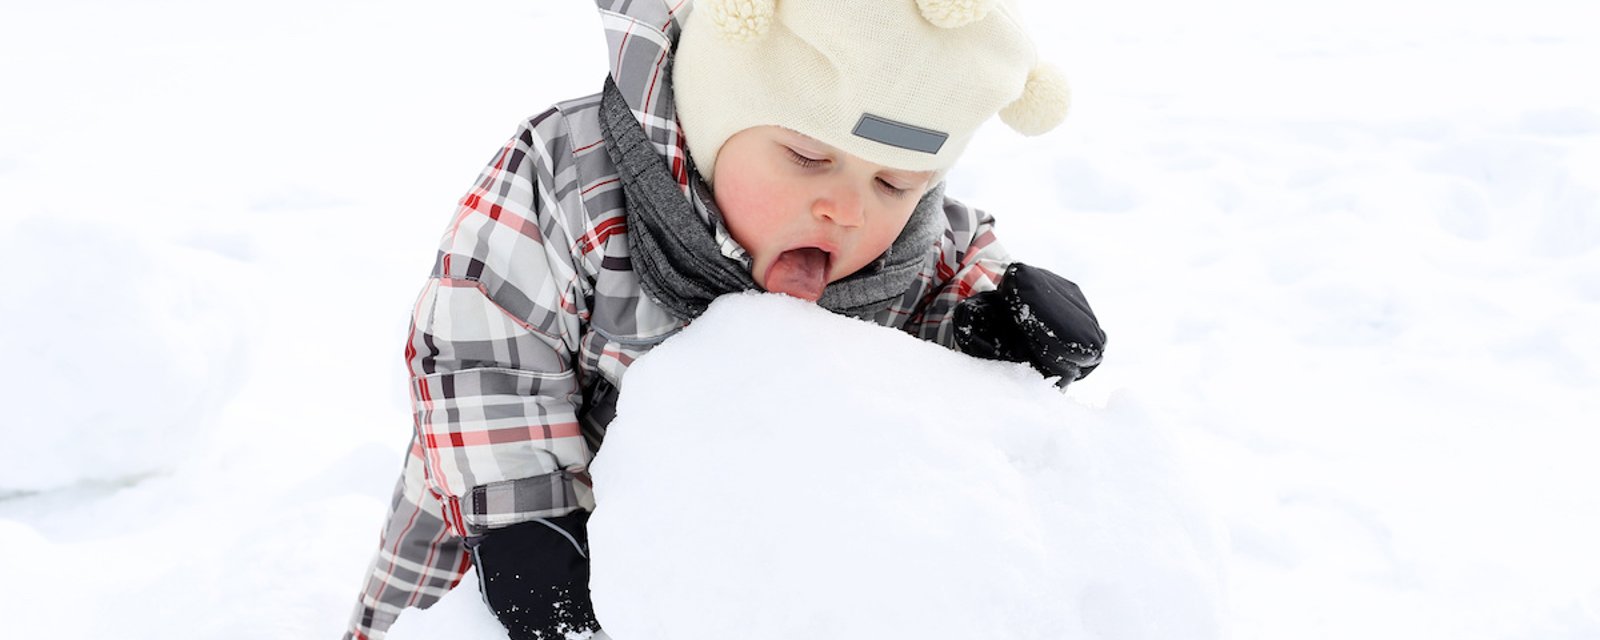 La science nous autorise à manger de la neige!